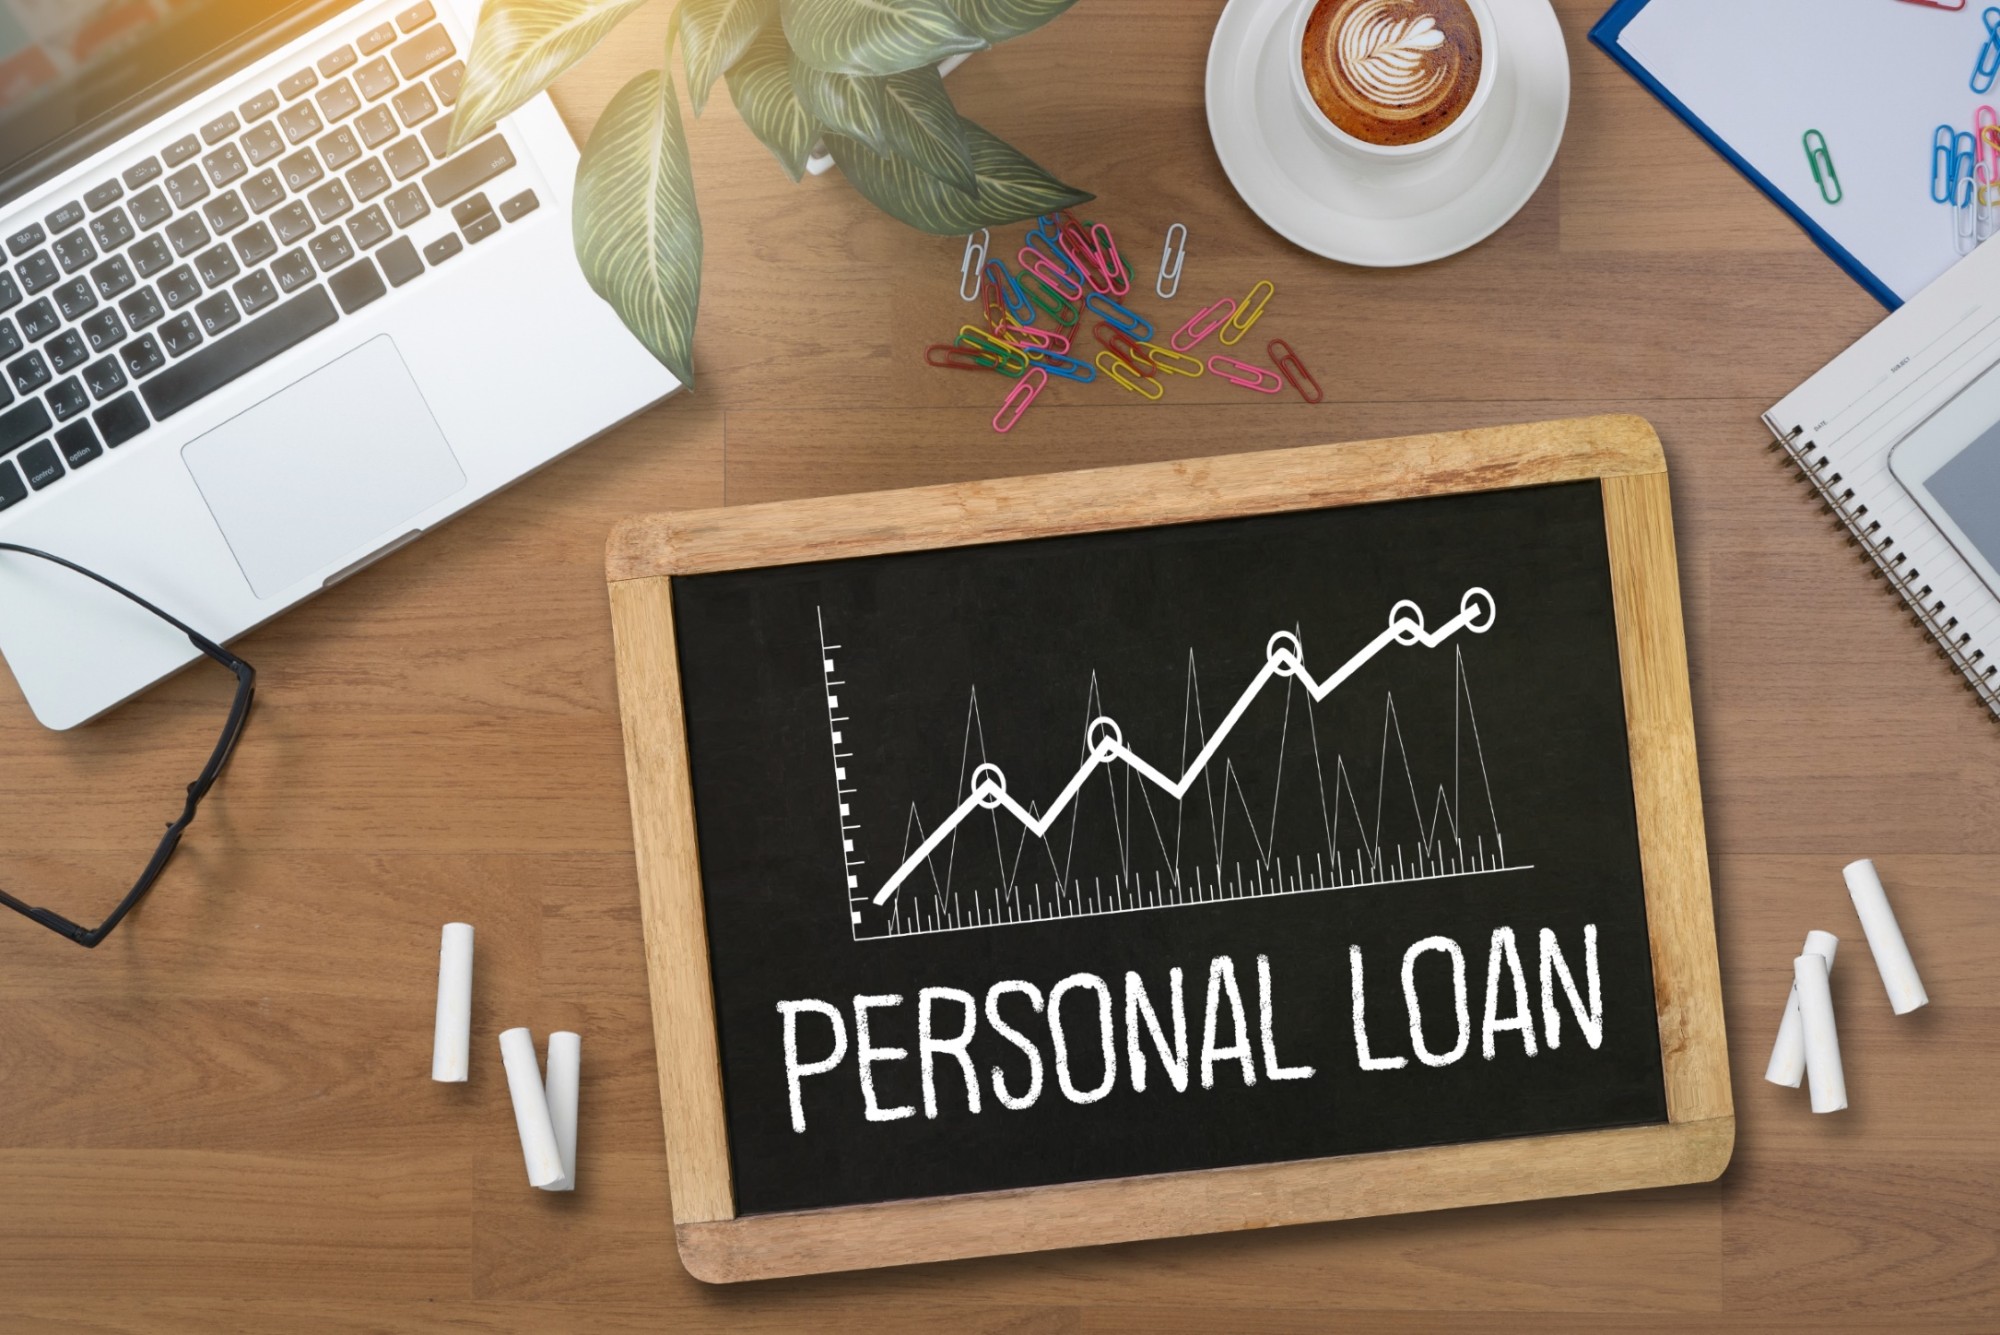 Cutx personal loan